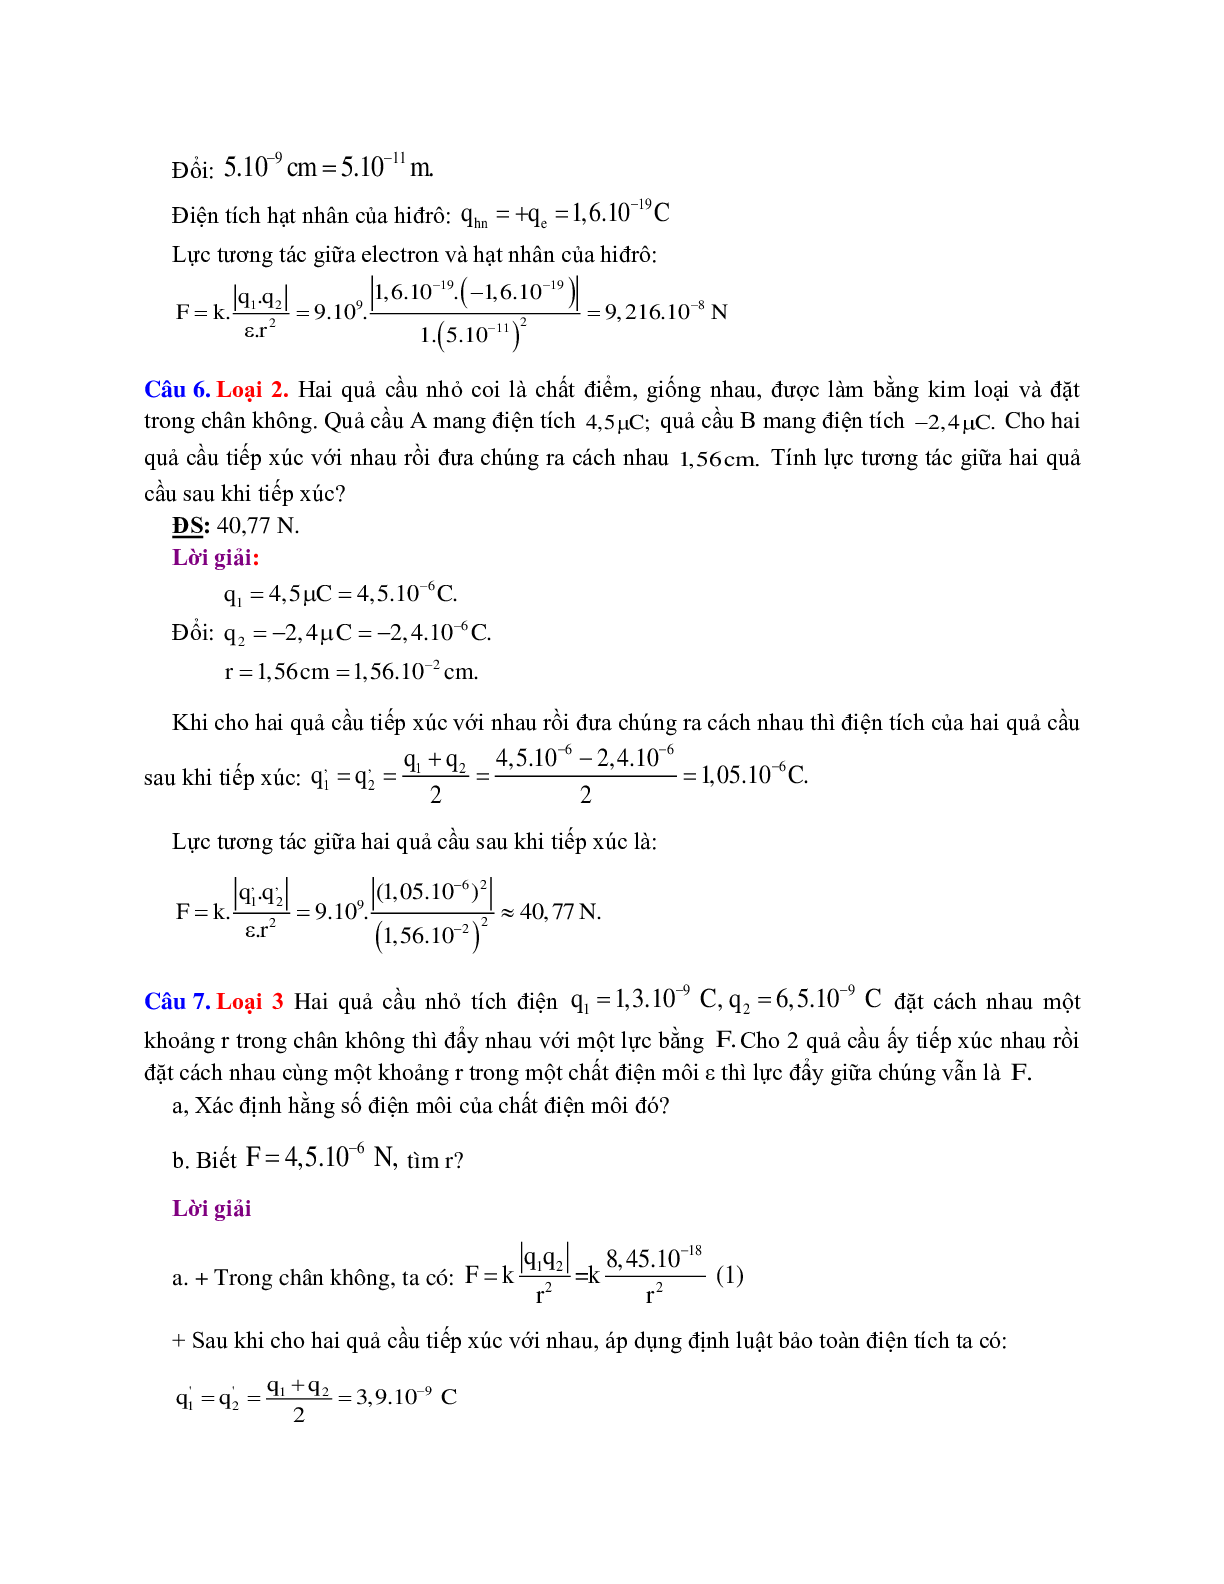 Chuyên đề Điện tích - Điện trường môn Vật lý lớp 11 (trang 3)